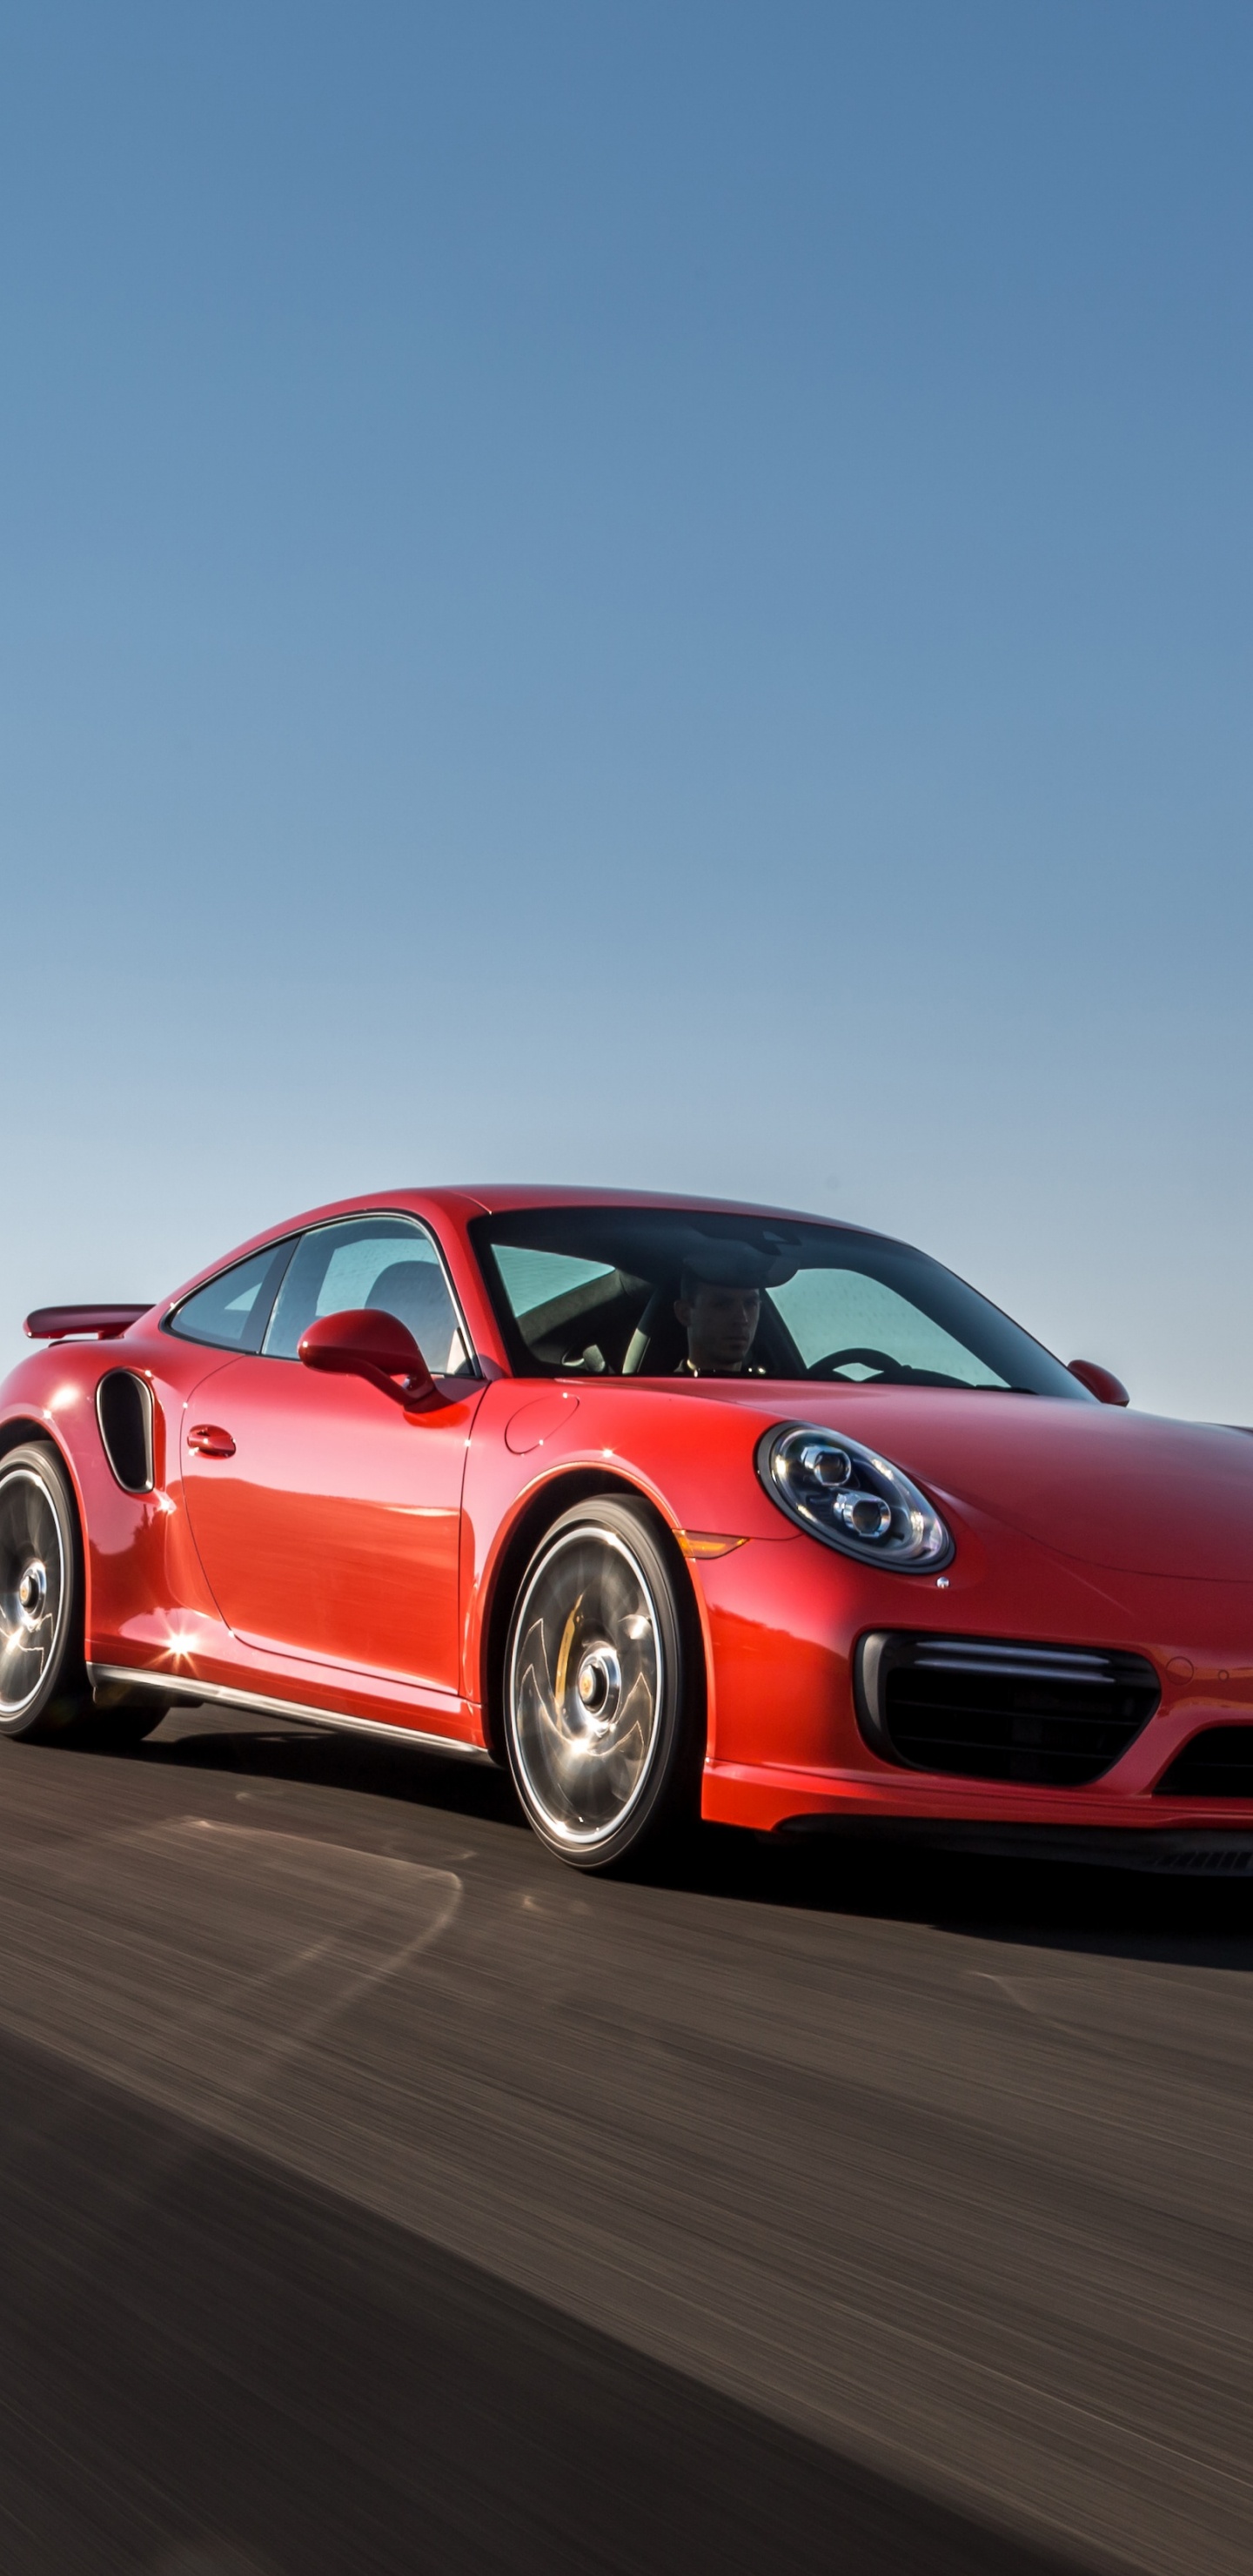 Porsche 911 Rojo en la Carretera Durante el Día. Wallpaper in 1440x2960 Resolution